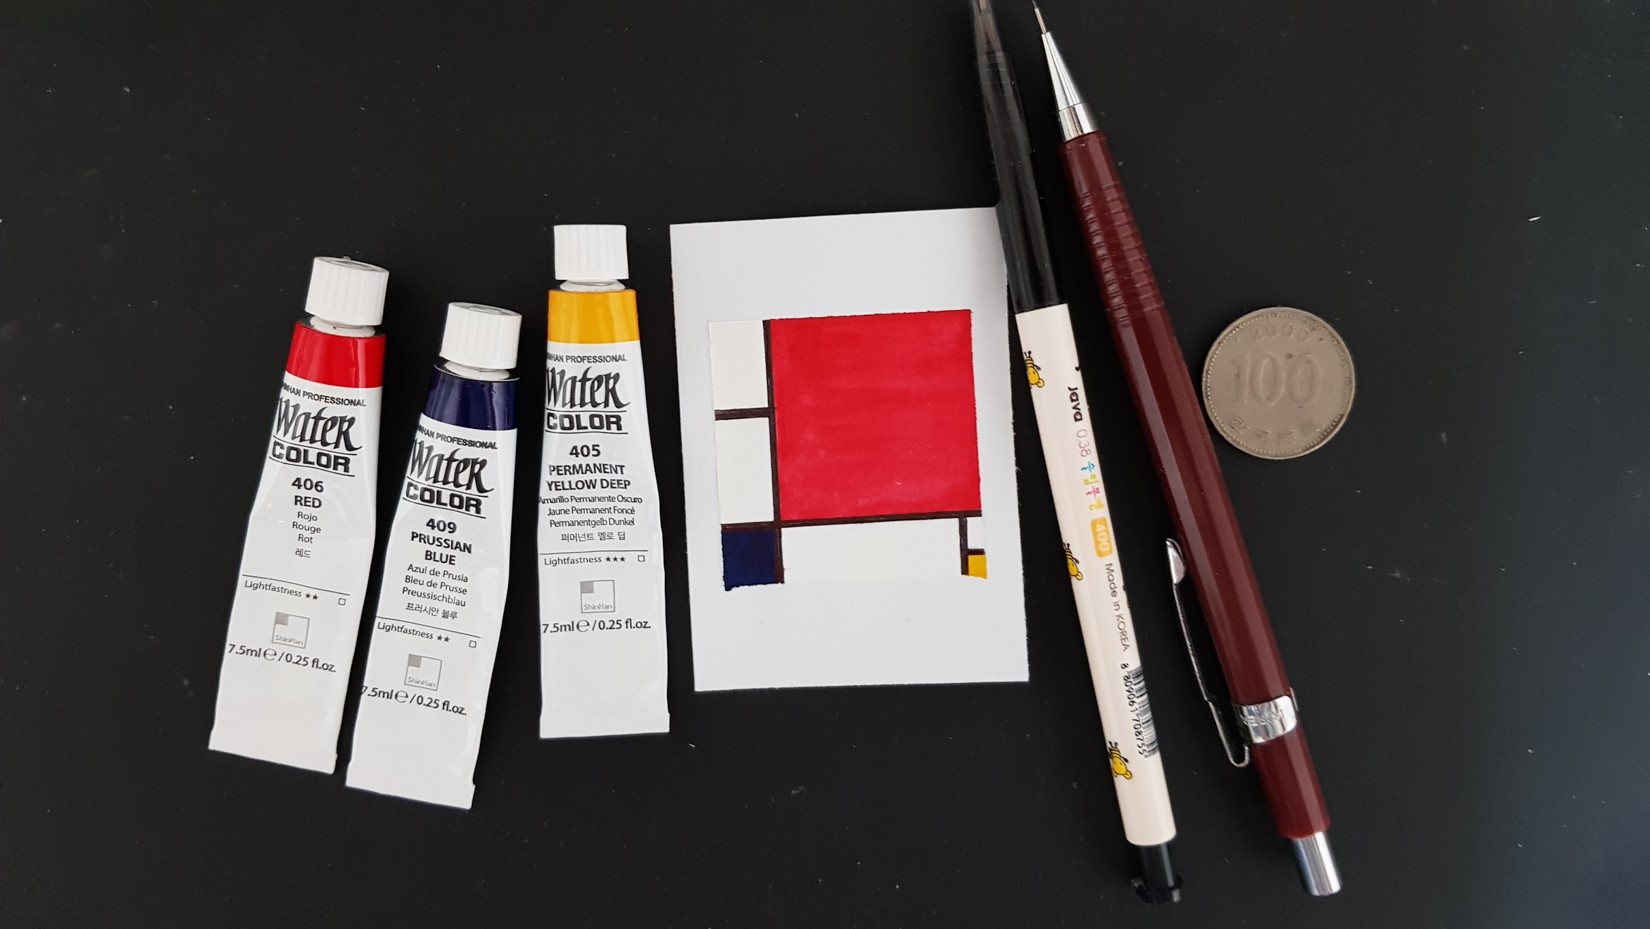 A4용지를 작게 자른 종이, 스케치할 때 사용할 샤프와 지우개, 채색할 때 사용할 검정 볼펜과 자, 그리고 빨강 파랑 노랑 수채물감을 준비했습니다.